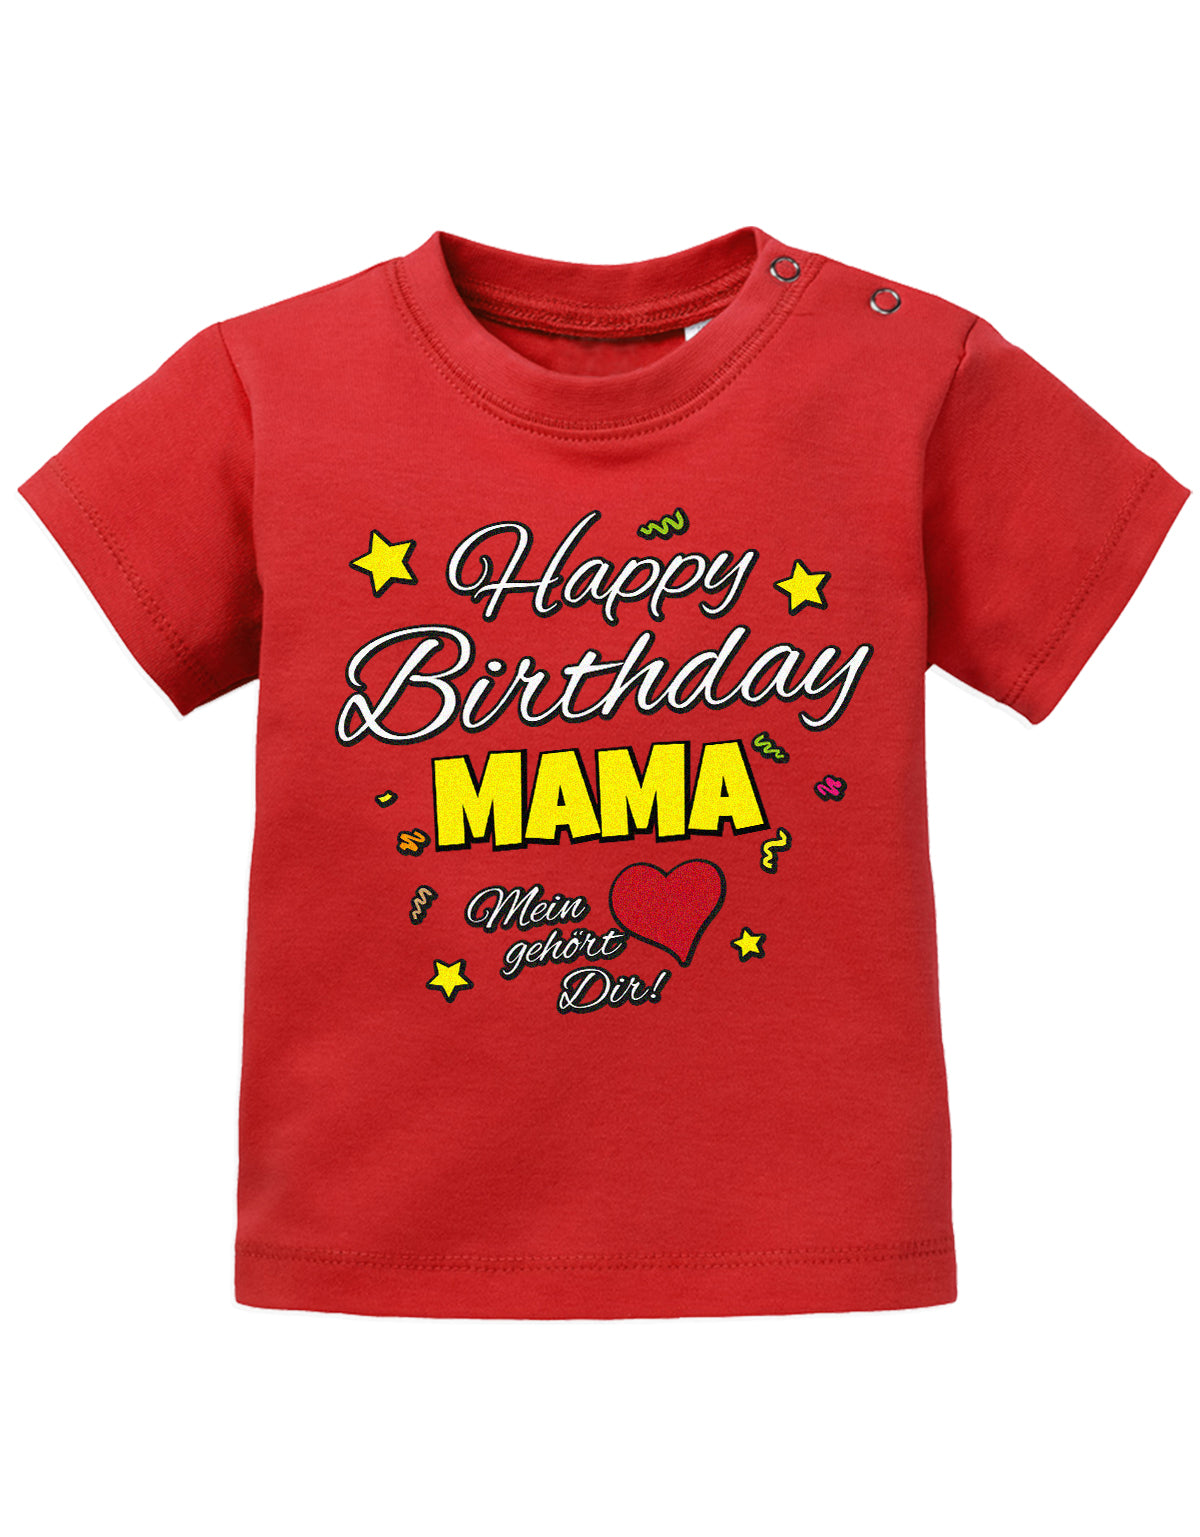 Mama Spruch Baby Shirt. Happy Birthday Mama, Mein Herz gehört dir. Rot